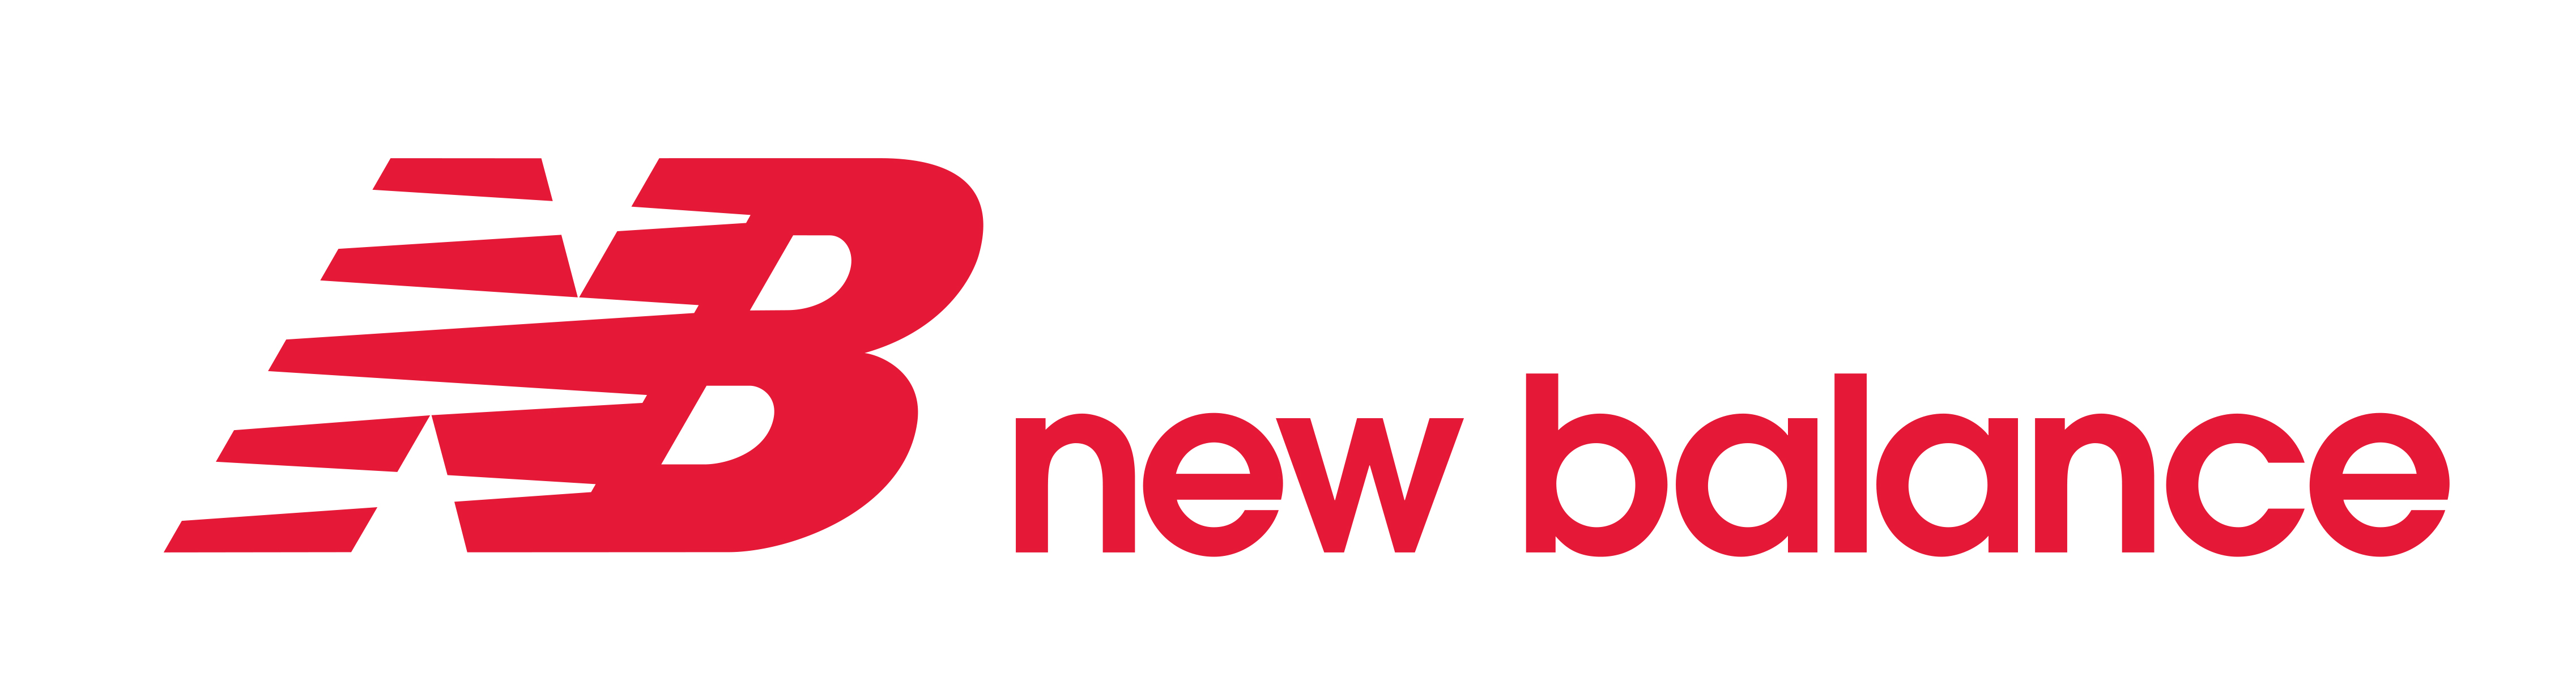 New Balance Logos